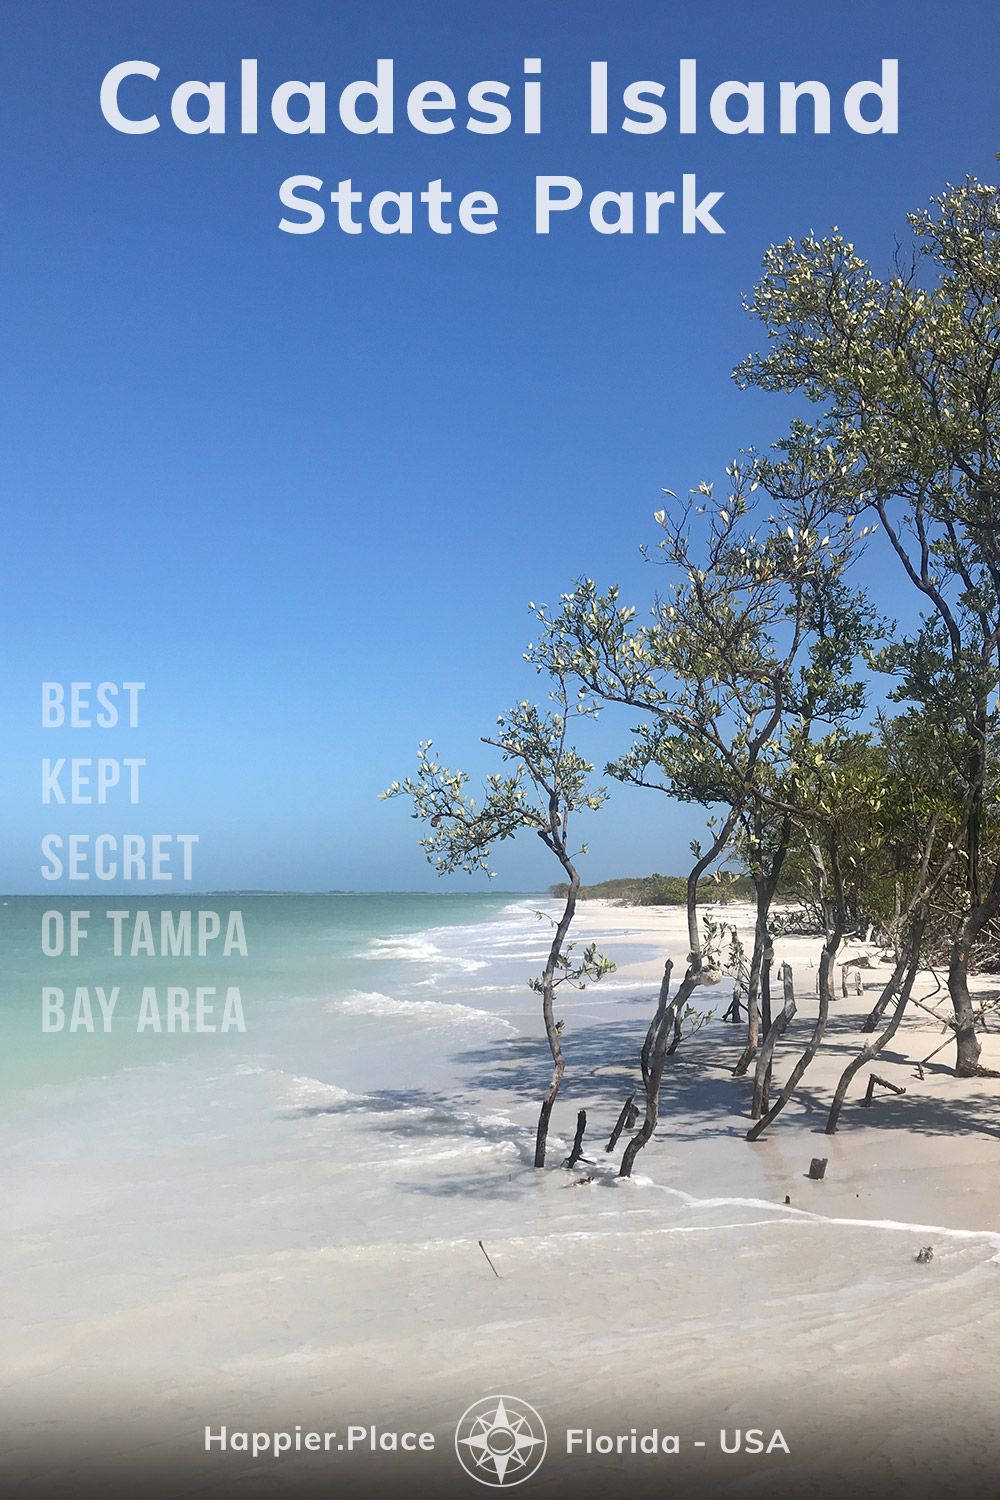 Parcul de Stat al insulei Caladesi, cel mai bine păstrat Secret al zonei Tampa Bay, Insula coastei Golfului nealterate